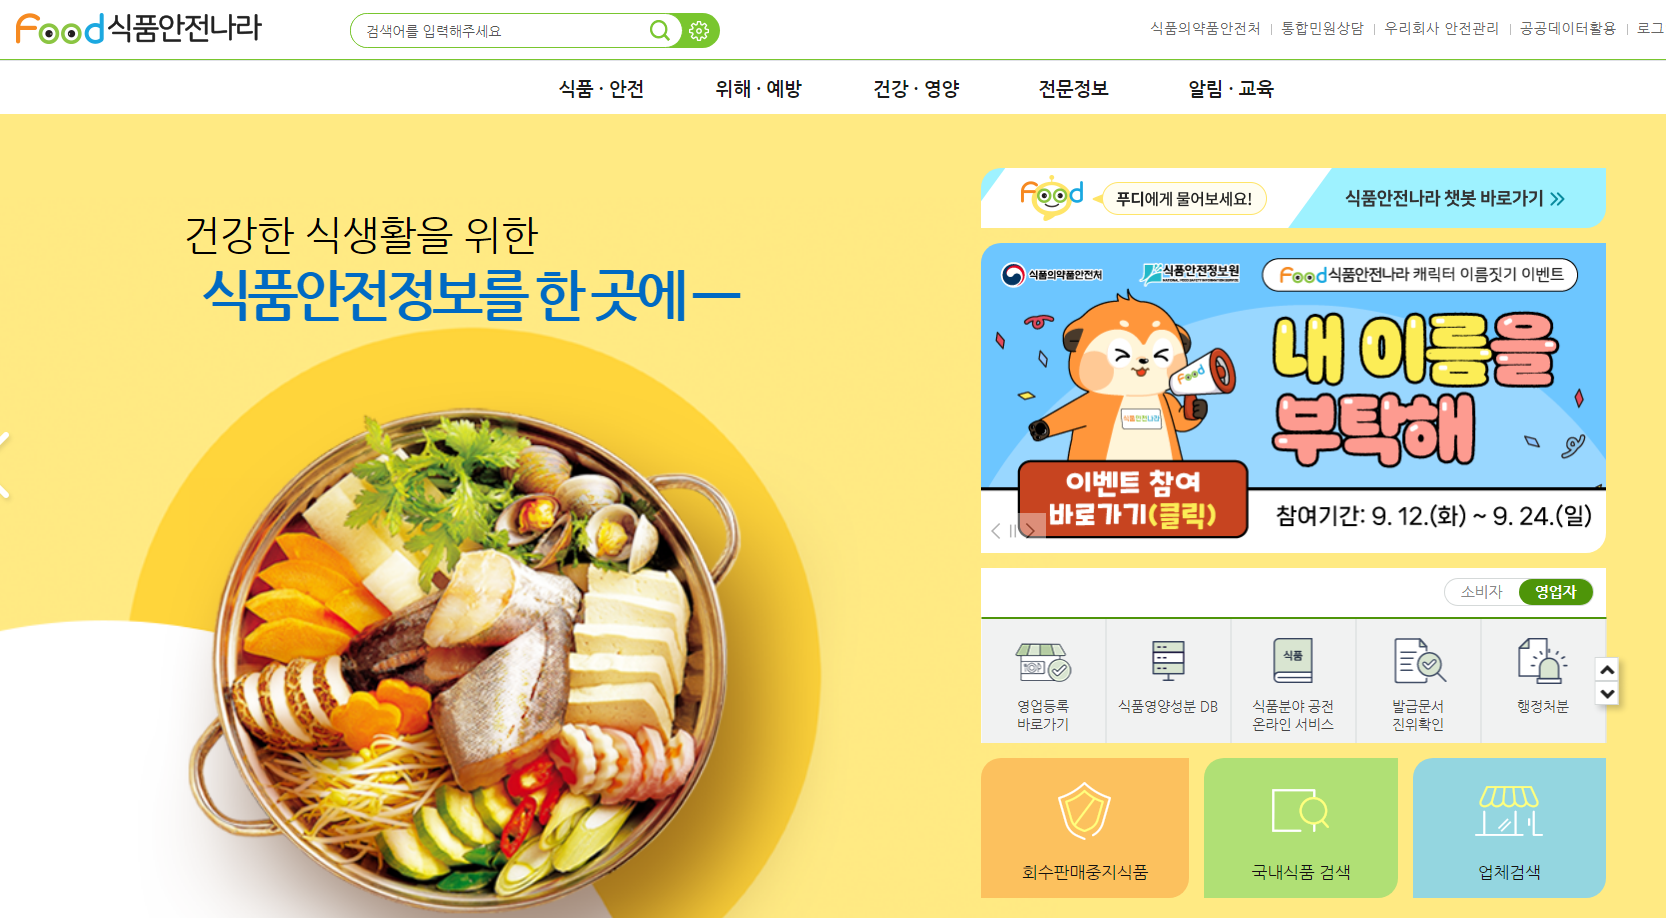 식품안전나라 식품행정통합시스템 (www.foodsafetykorea.go.kr)